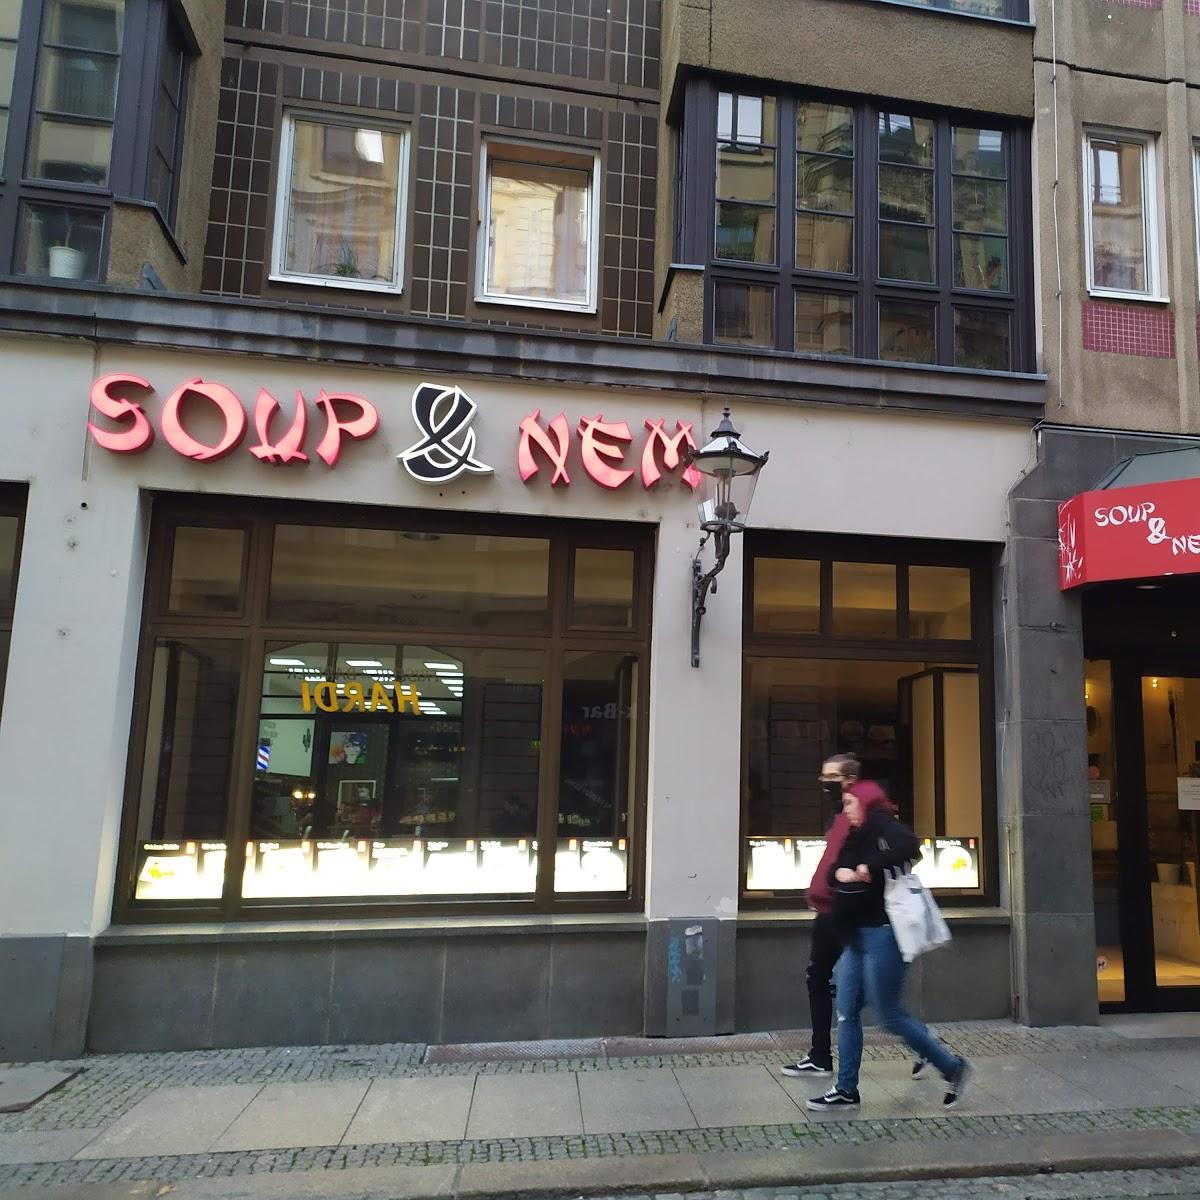 Restaurant "Soup&nem Restaurant" in Leipzig